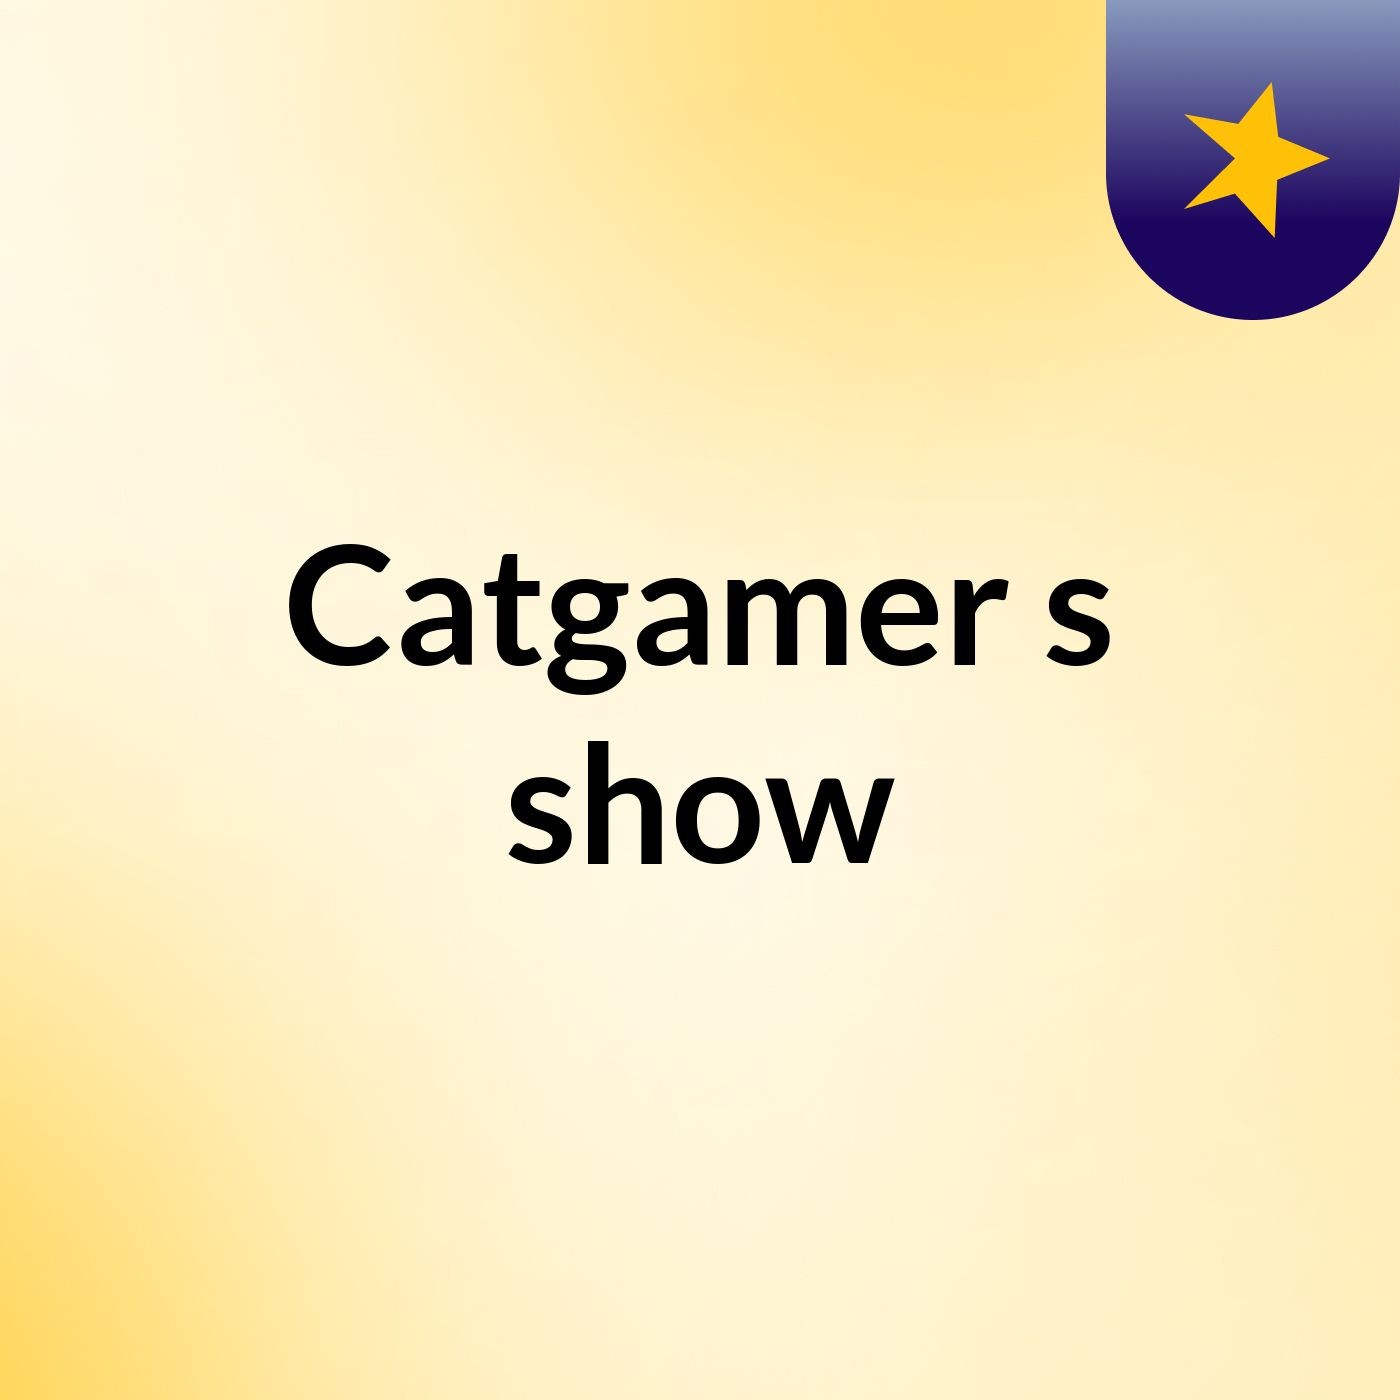 Catgamer's show